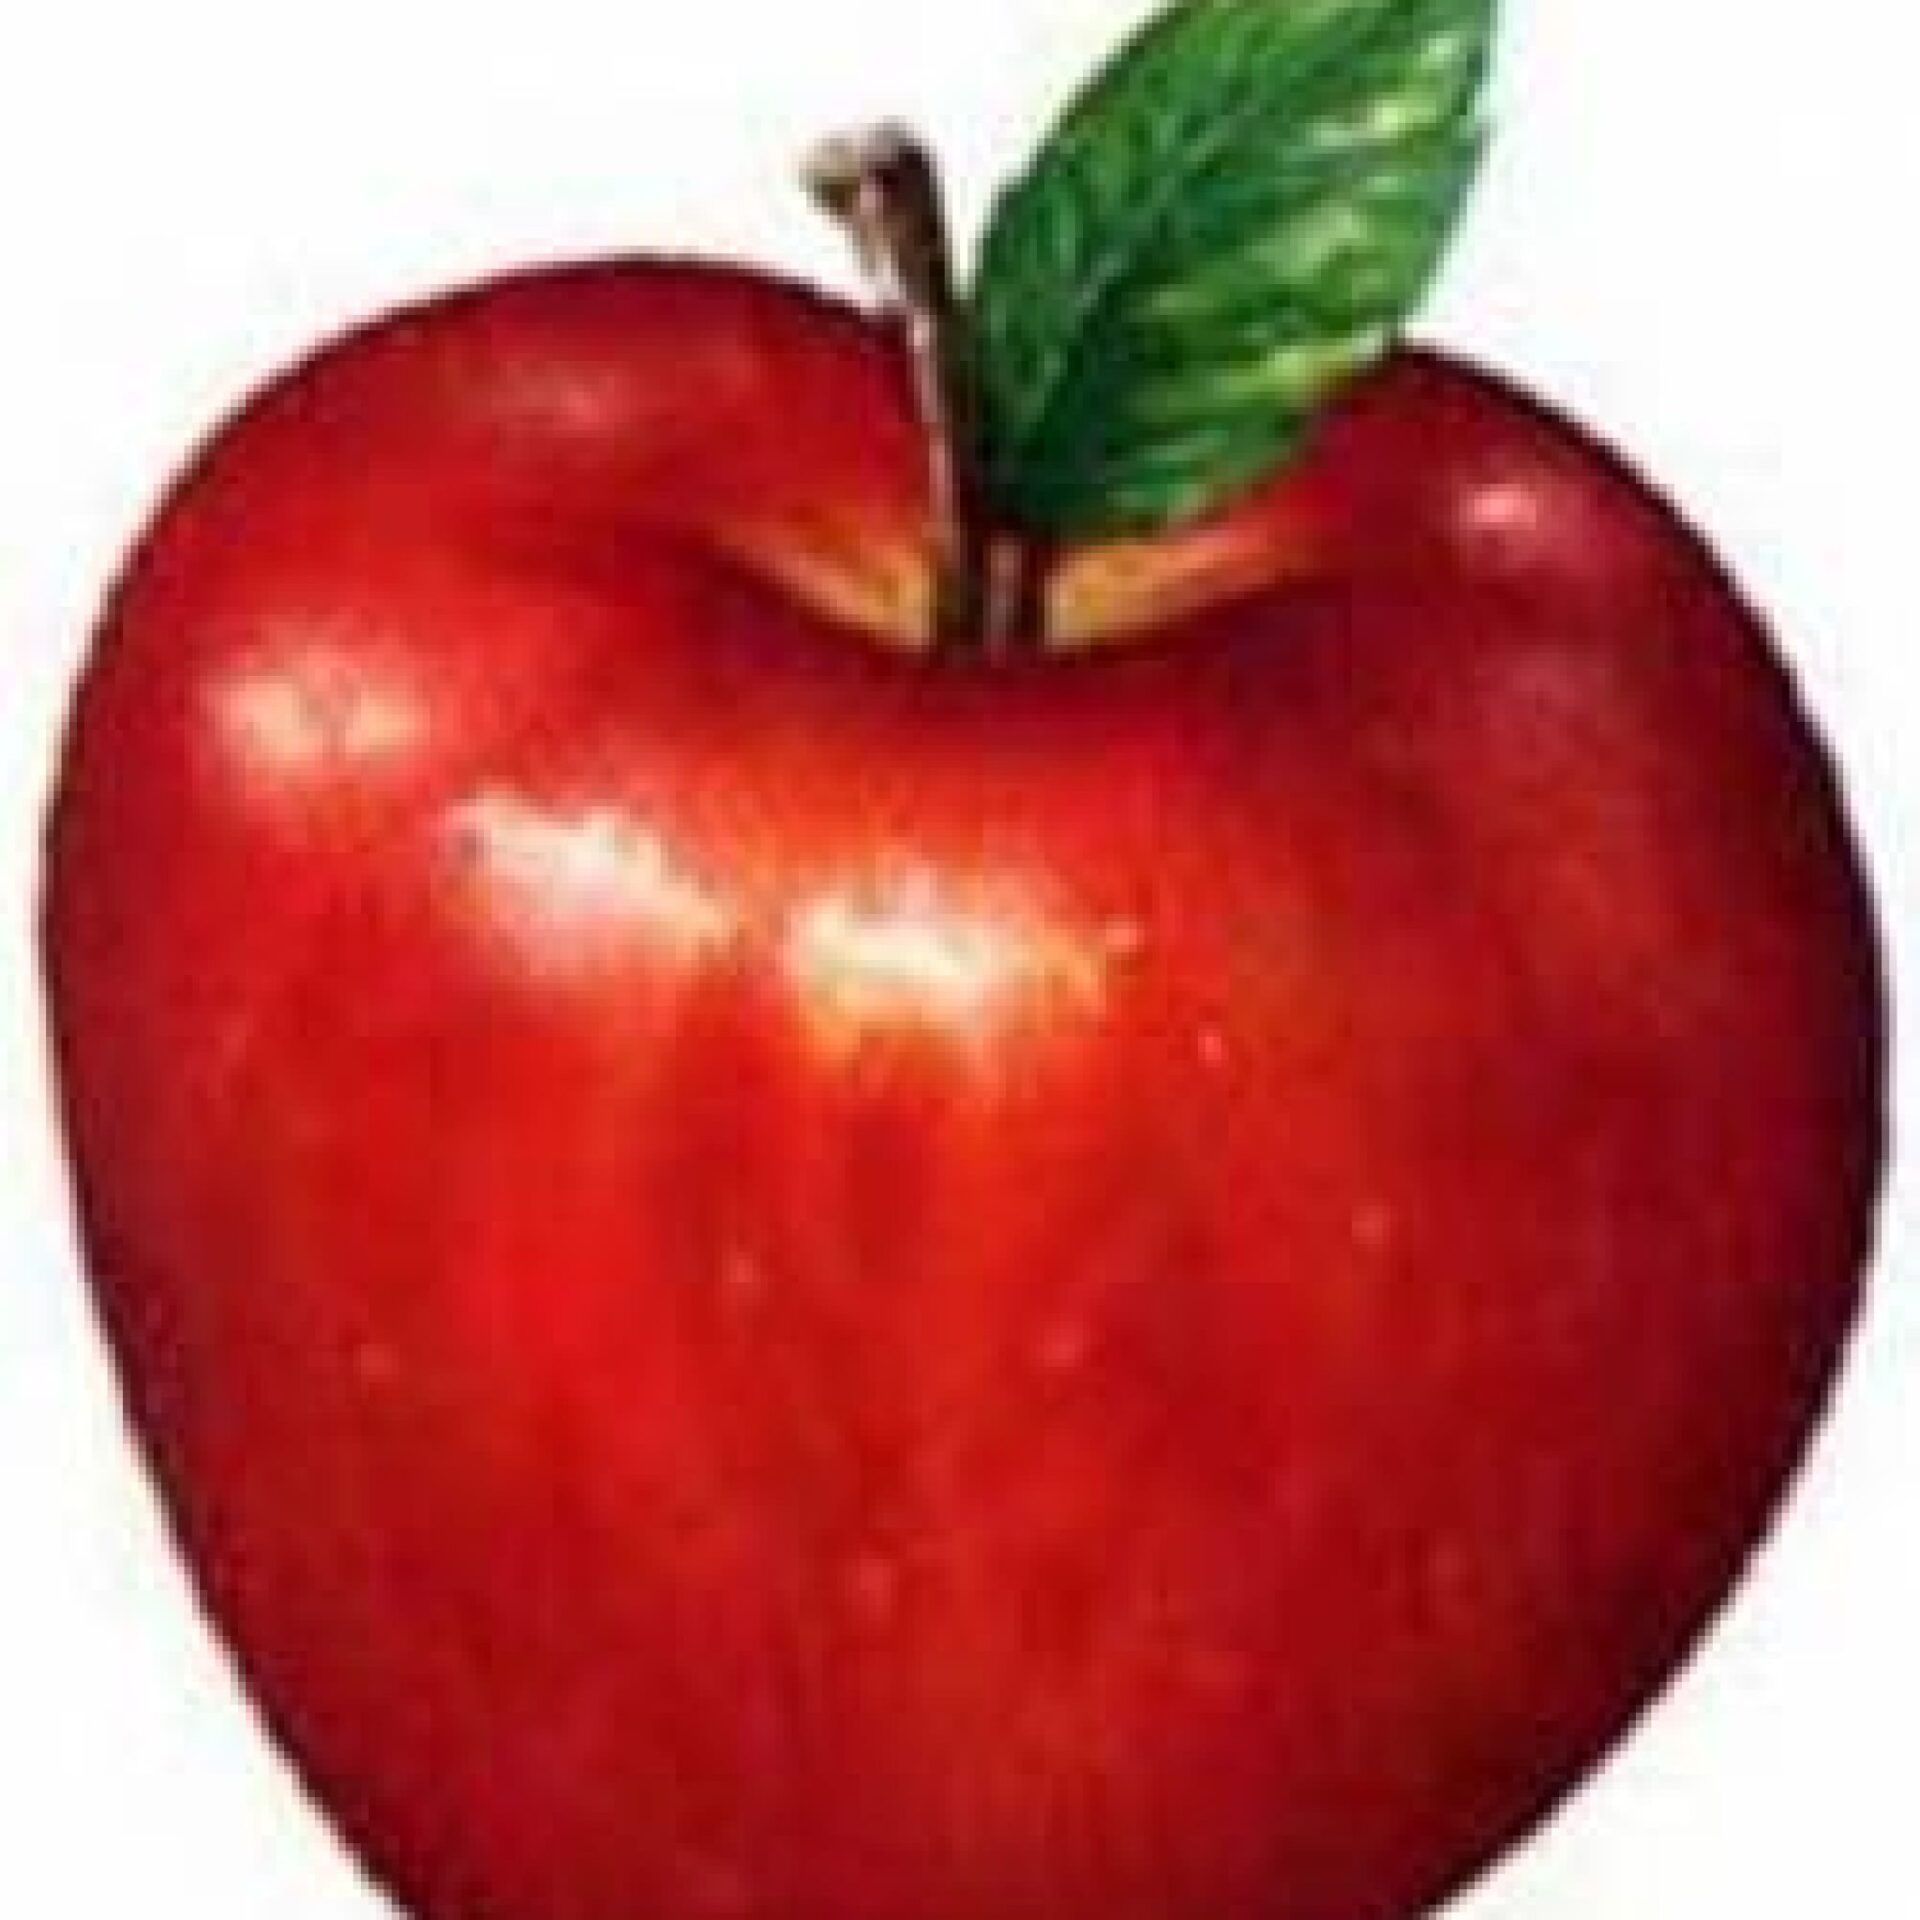 La Manzana: El Fruto Prohibido Que Está Bueno